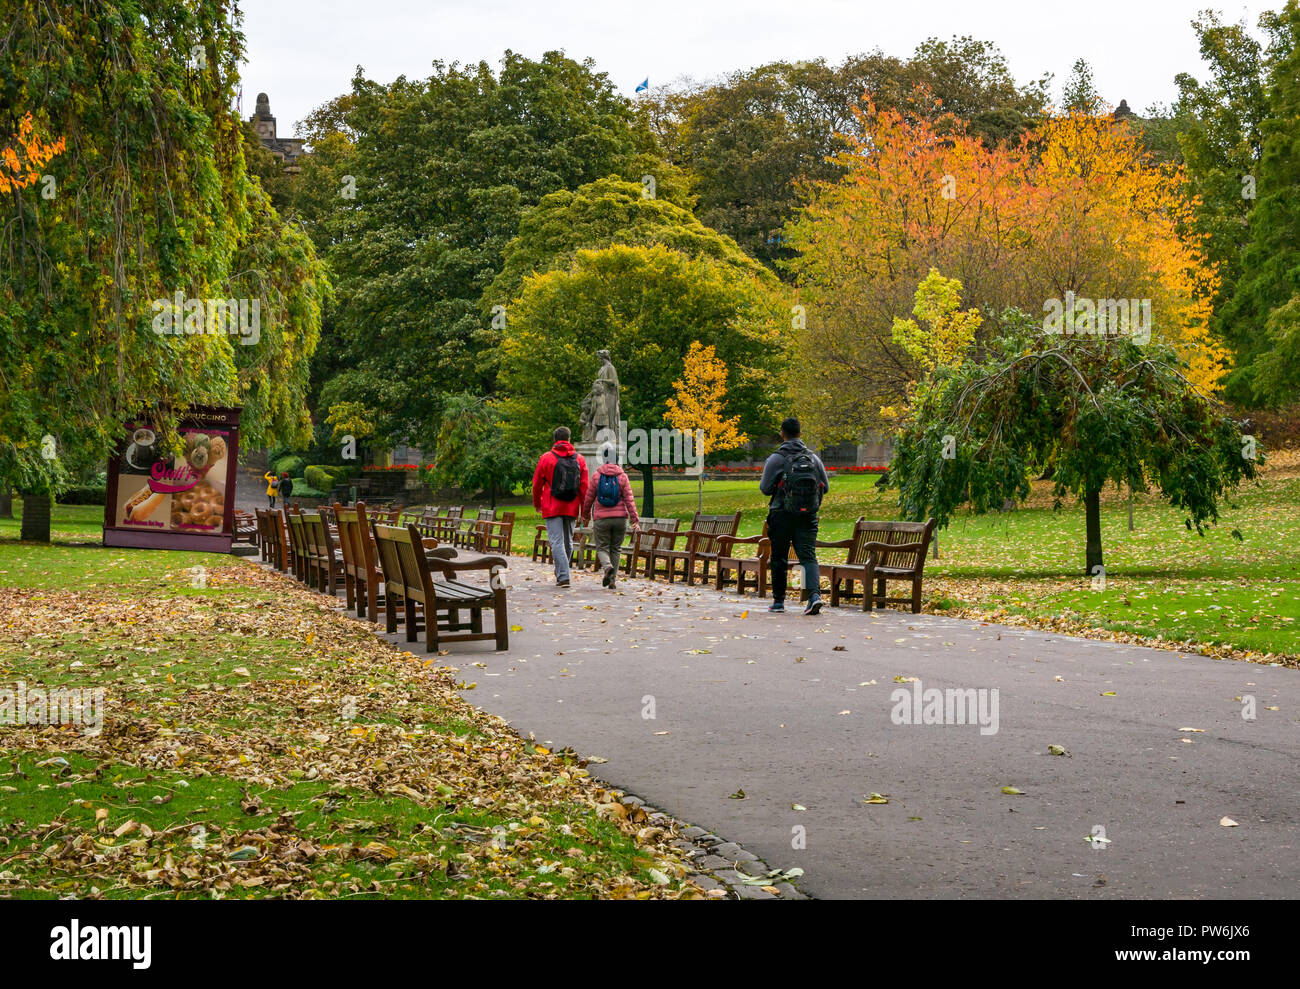 Menschen zu Fuß vorbei an Holzbänken im Princes Street Gardens mit Herbst Blatt Farben, Edinburgh, Schottland, Großbritannien Stockfoto